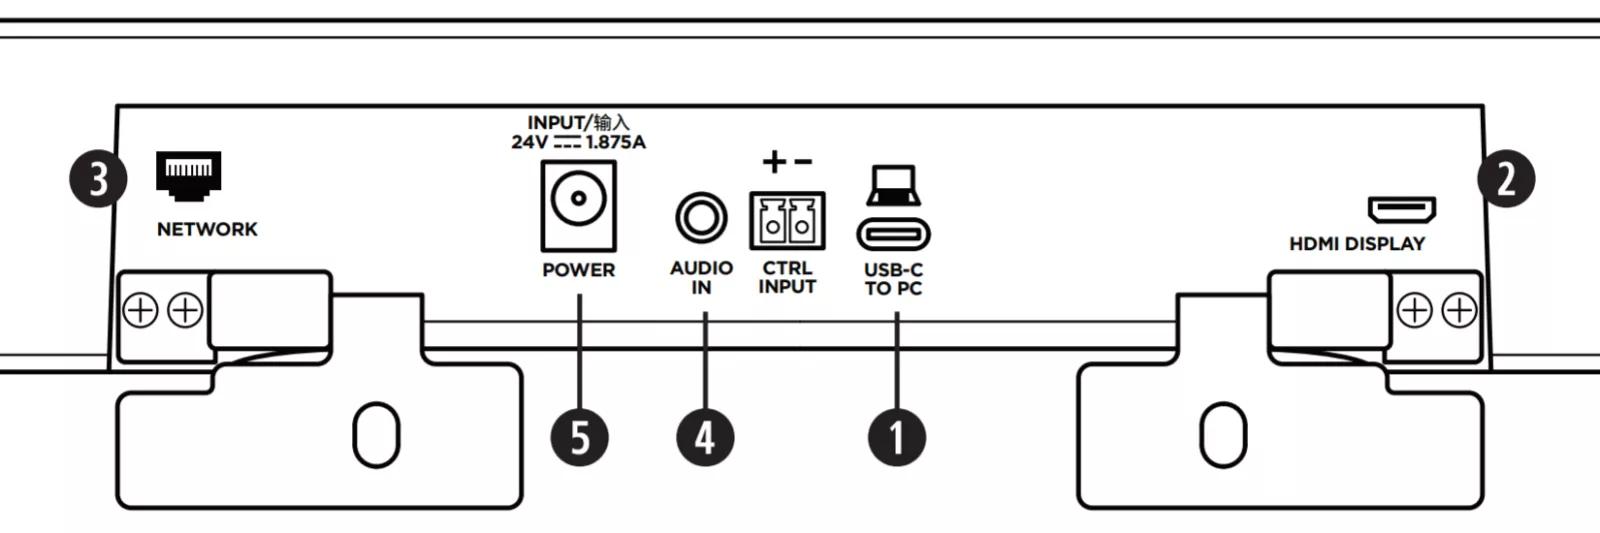 vb1 panel przyłączeniowy. Sieć, zasilanie, wejście audio, wejście sterujące, USB-C, Wyświetlacz HDMI